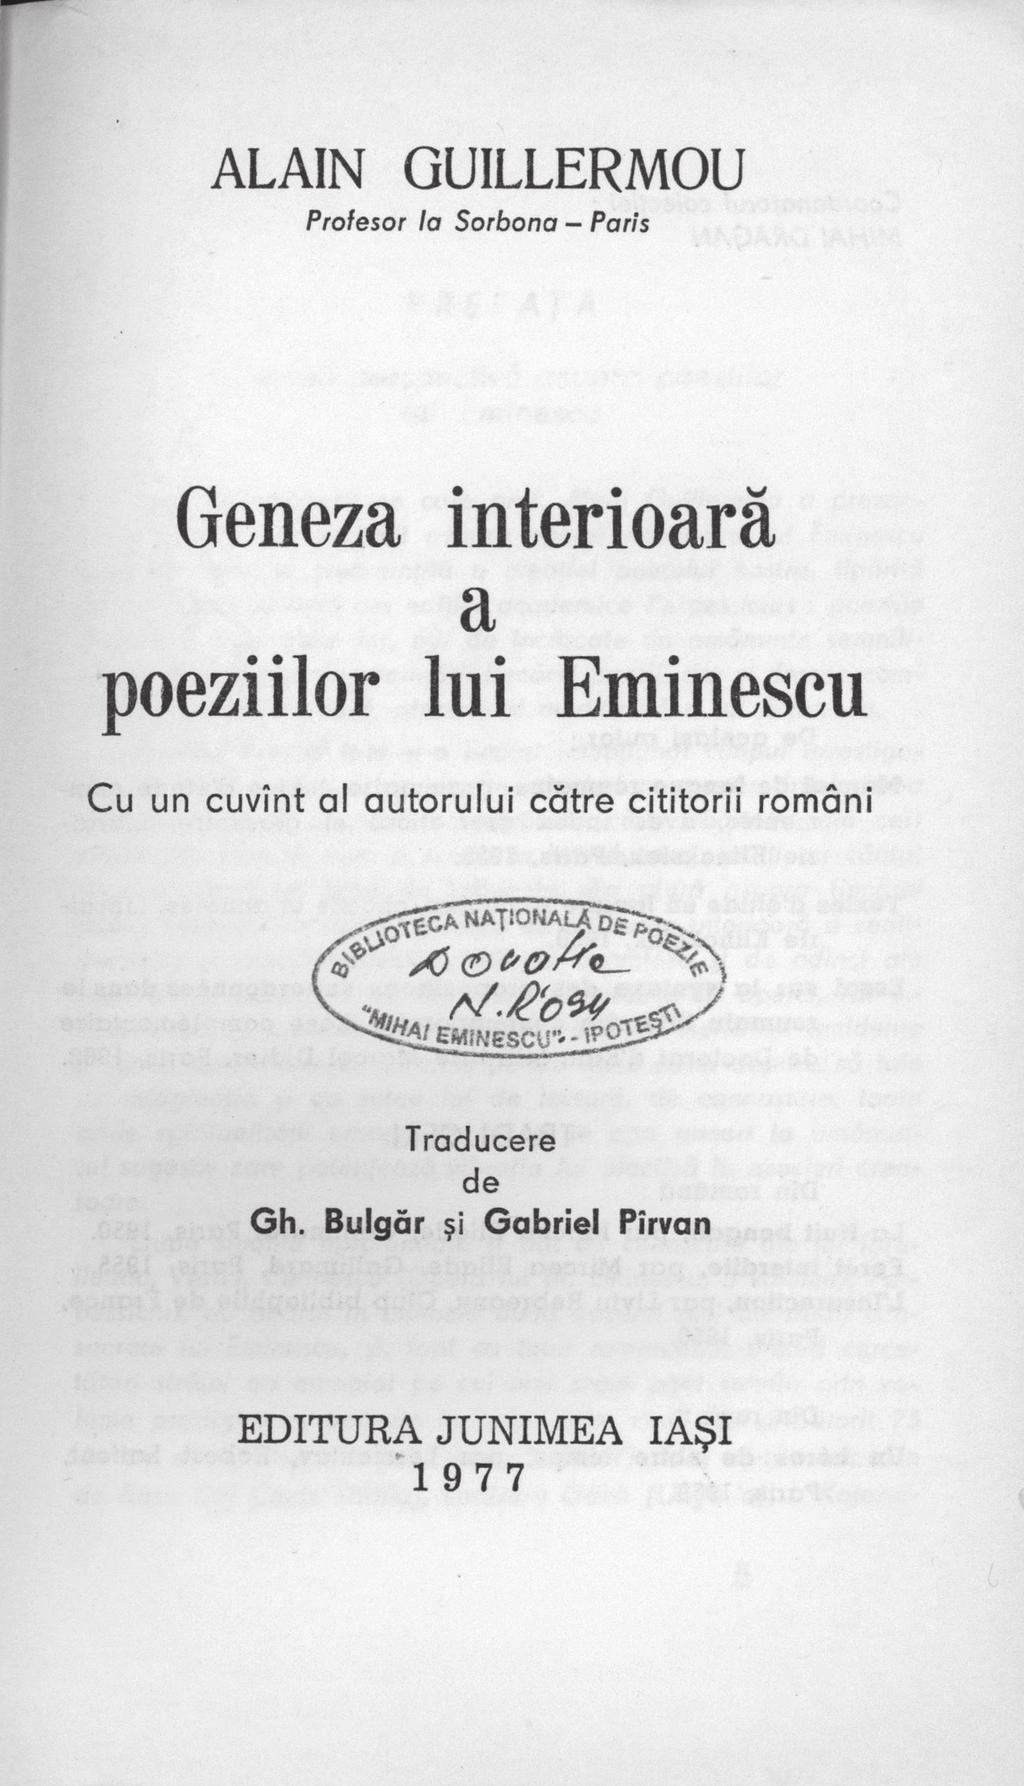 Cel dintîi critic căruia am arătat versurile mele a fost Titu Maiorescu și tot Titu Maiorescu mi le-a tipărit pentru prima oară, în Convorbiri literare, în toamna 1911.(.